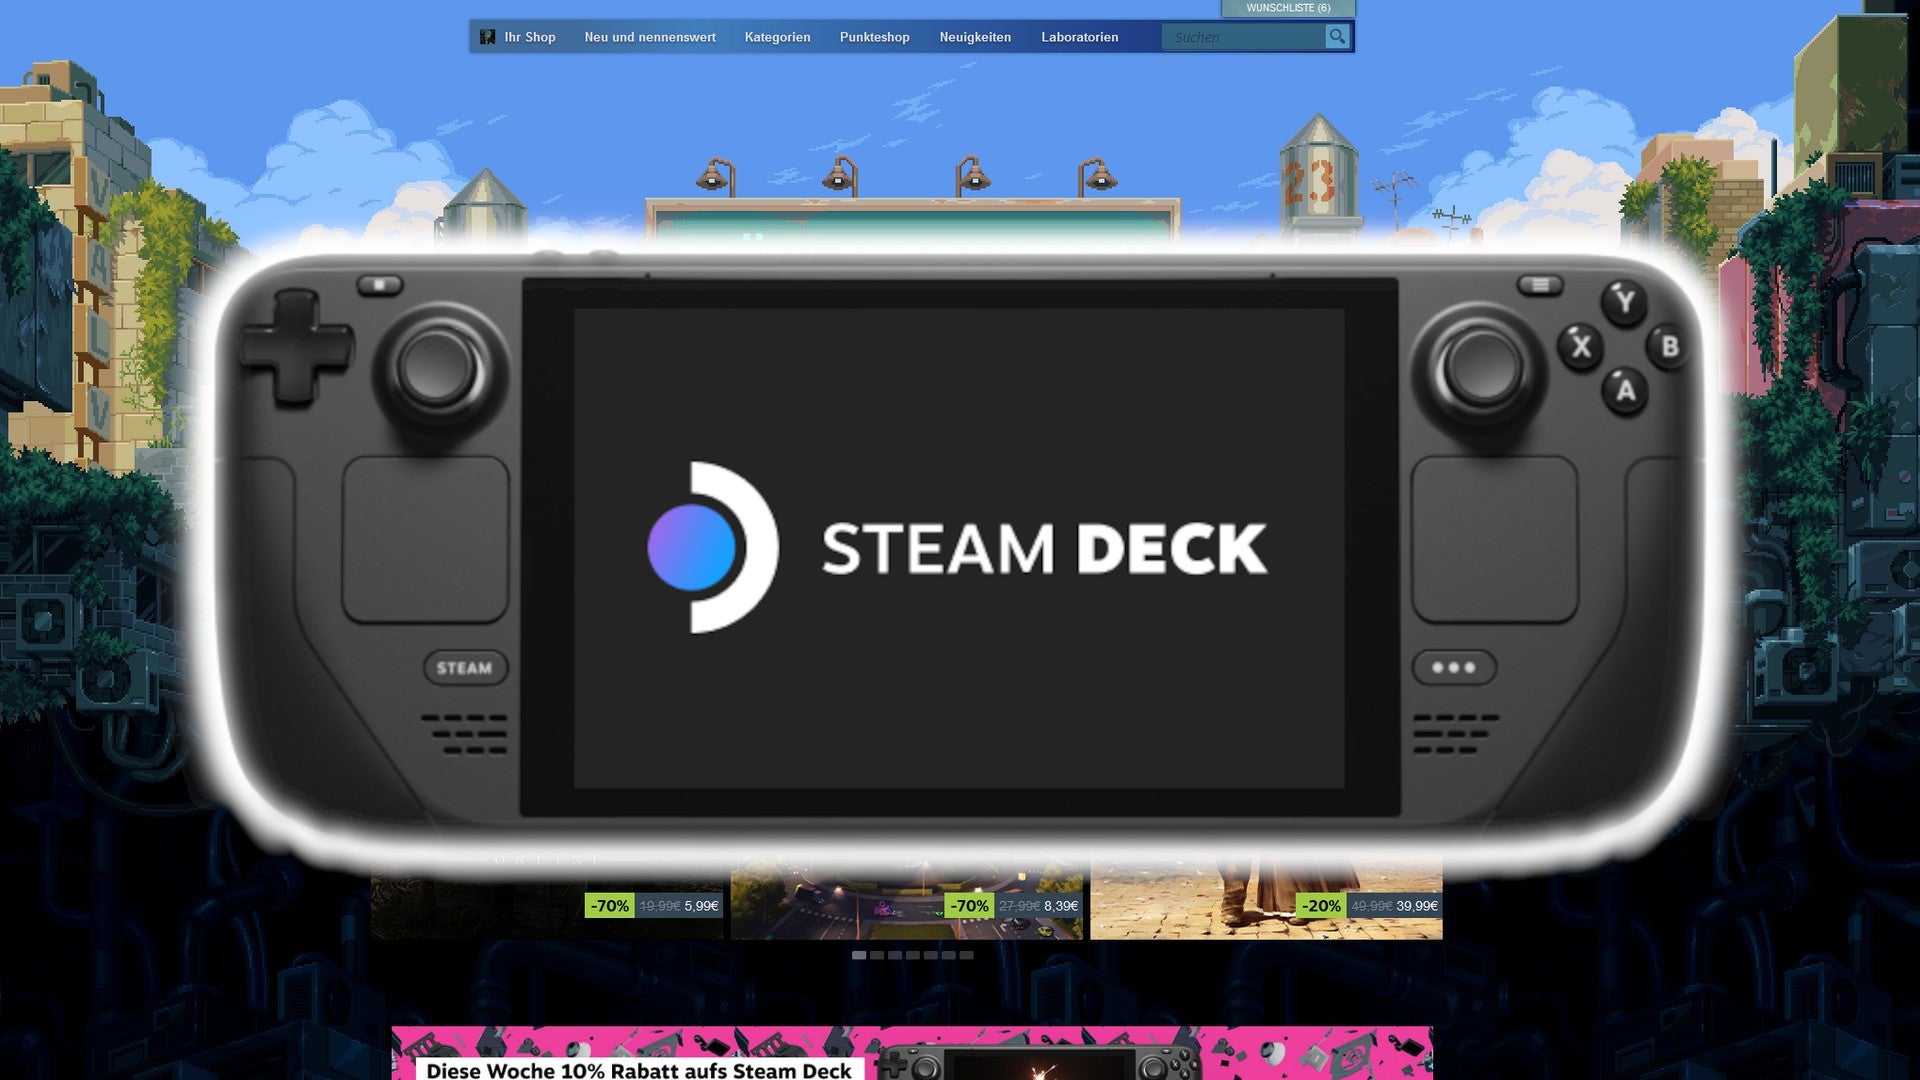 Ein Steam Deck mit OLED-Bildschirm? Das ist derzeit nicht sehr wahrscheinlich.